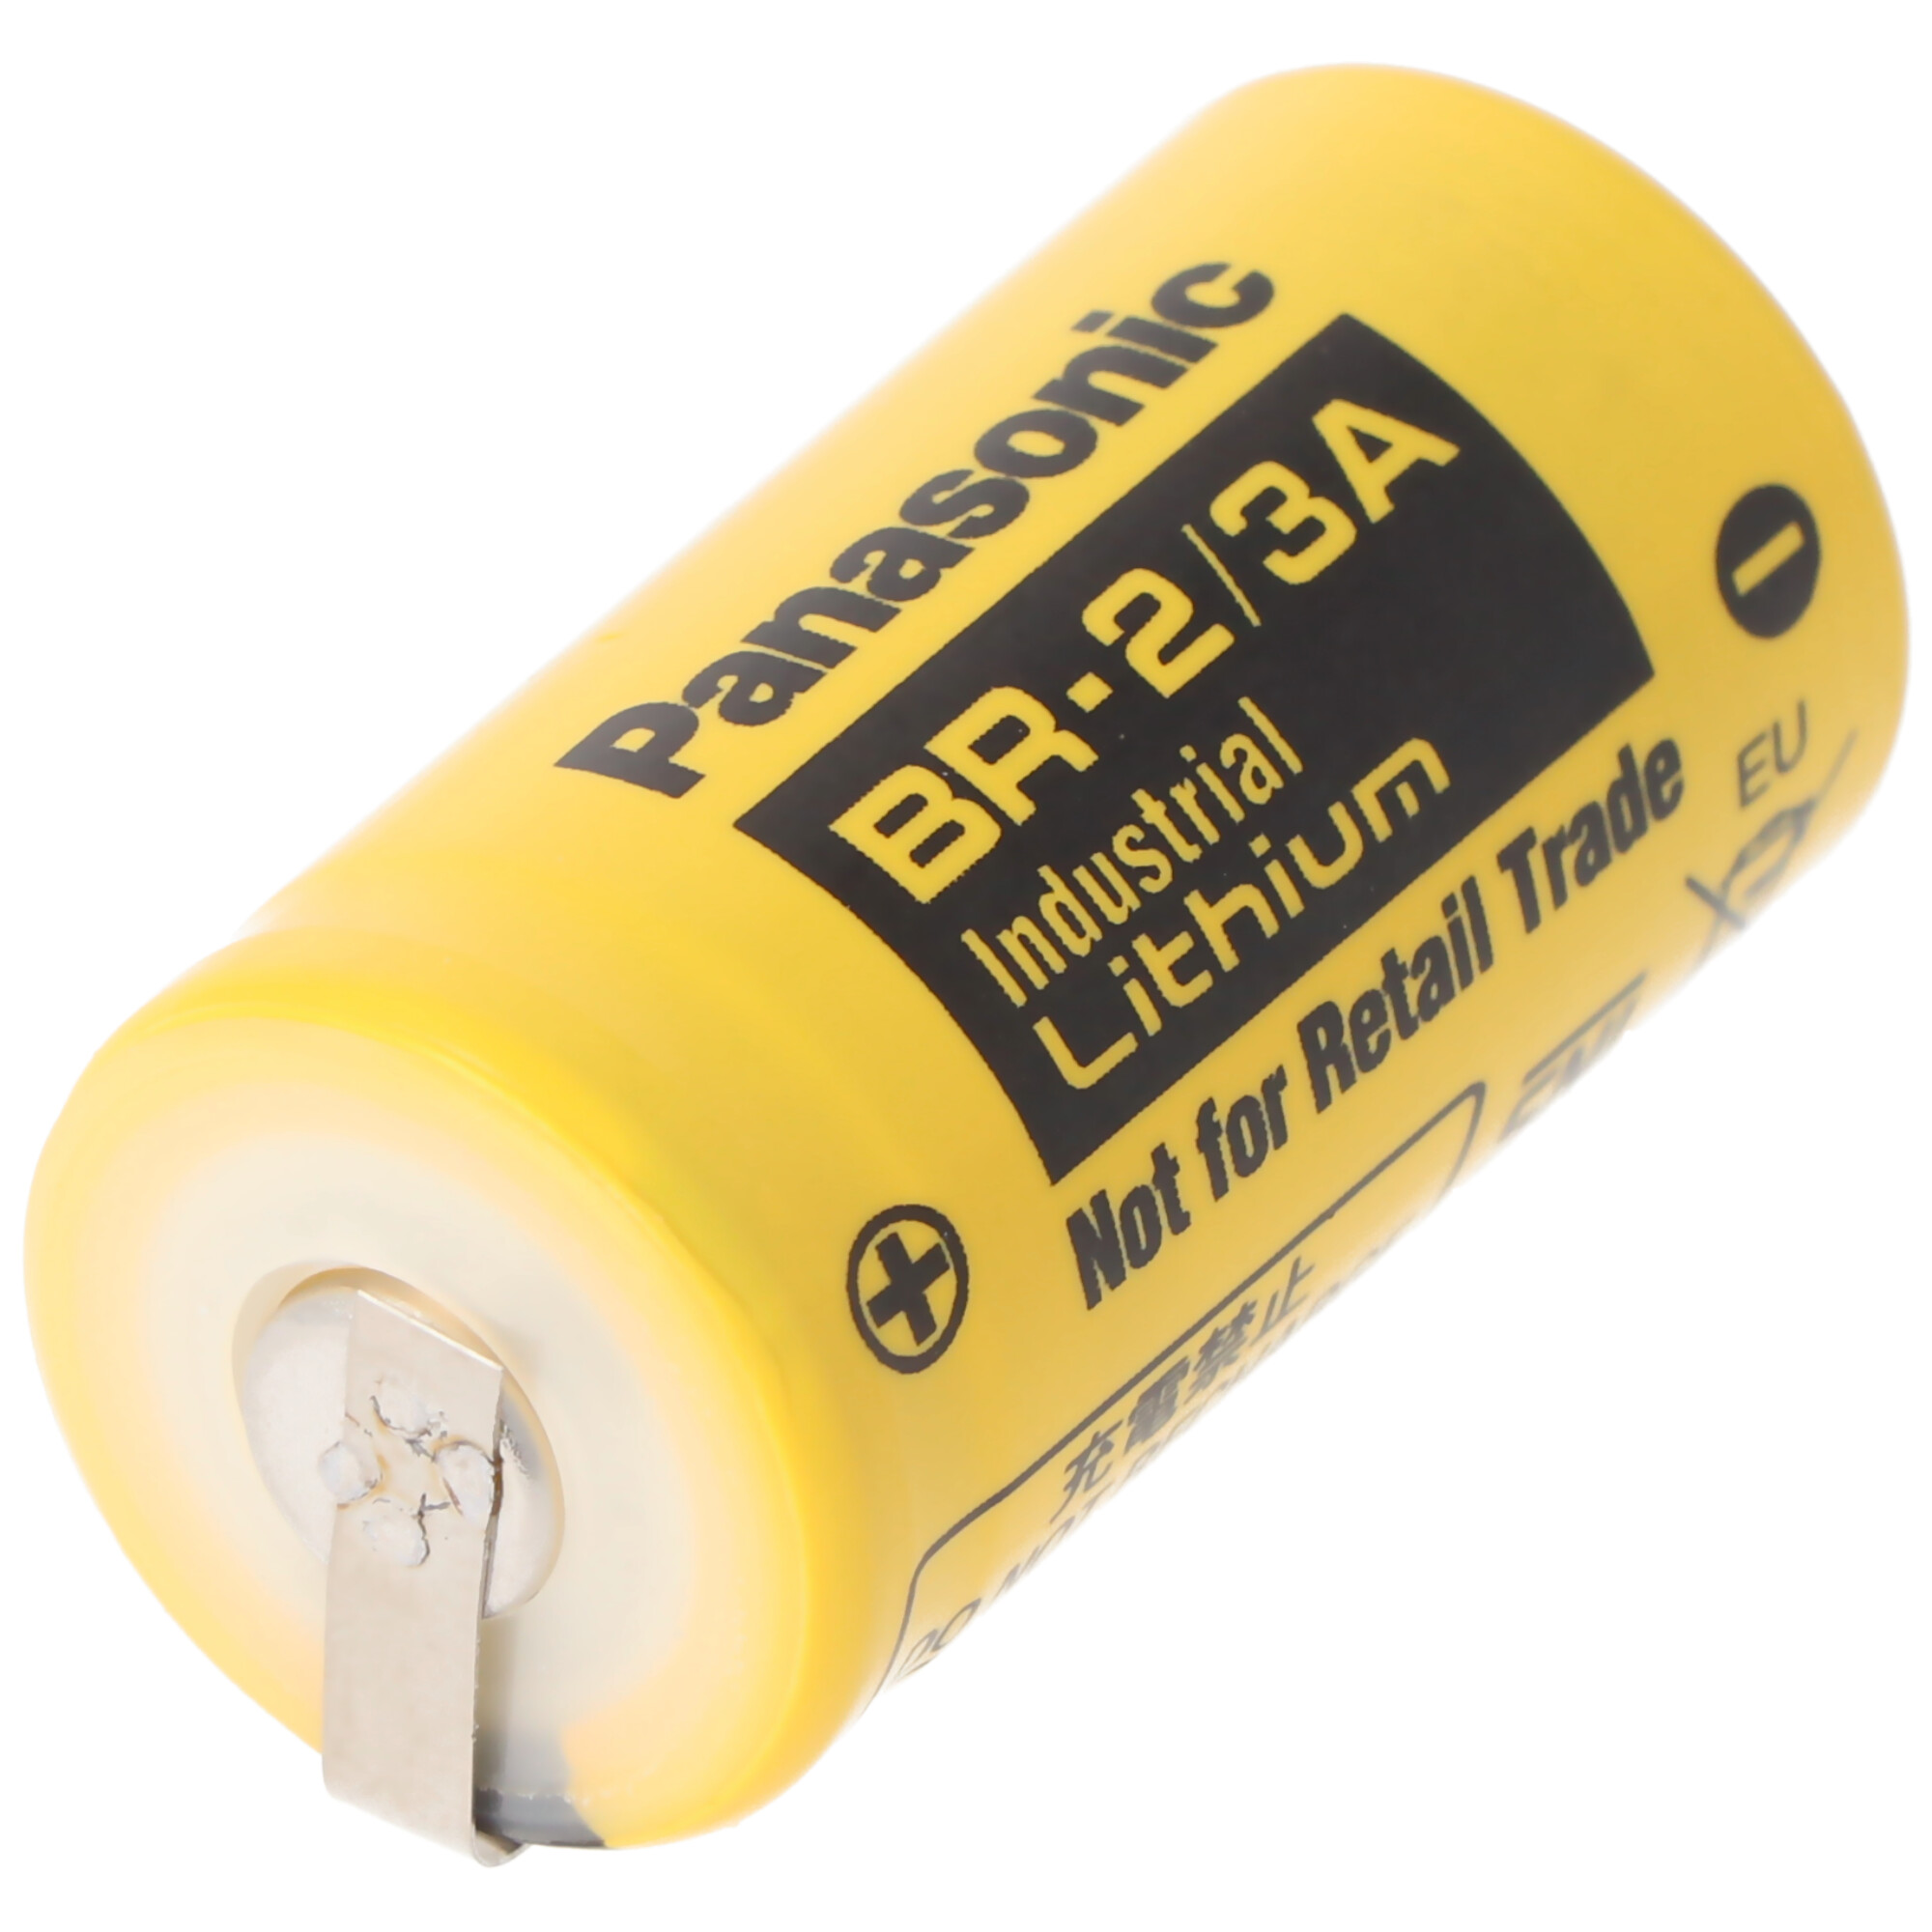 BR-2/3 A Panasonic Lithium Batterie 3,0 Volt mit Lötfahnen in U-Form